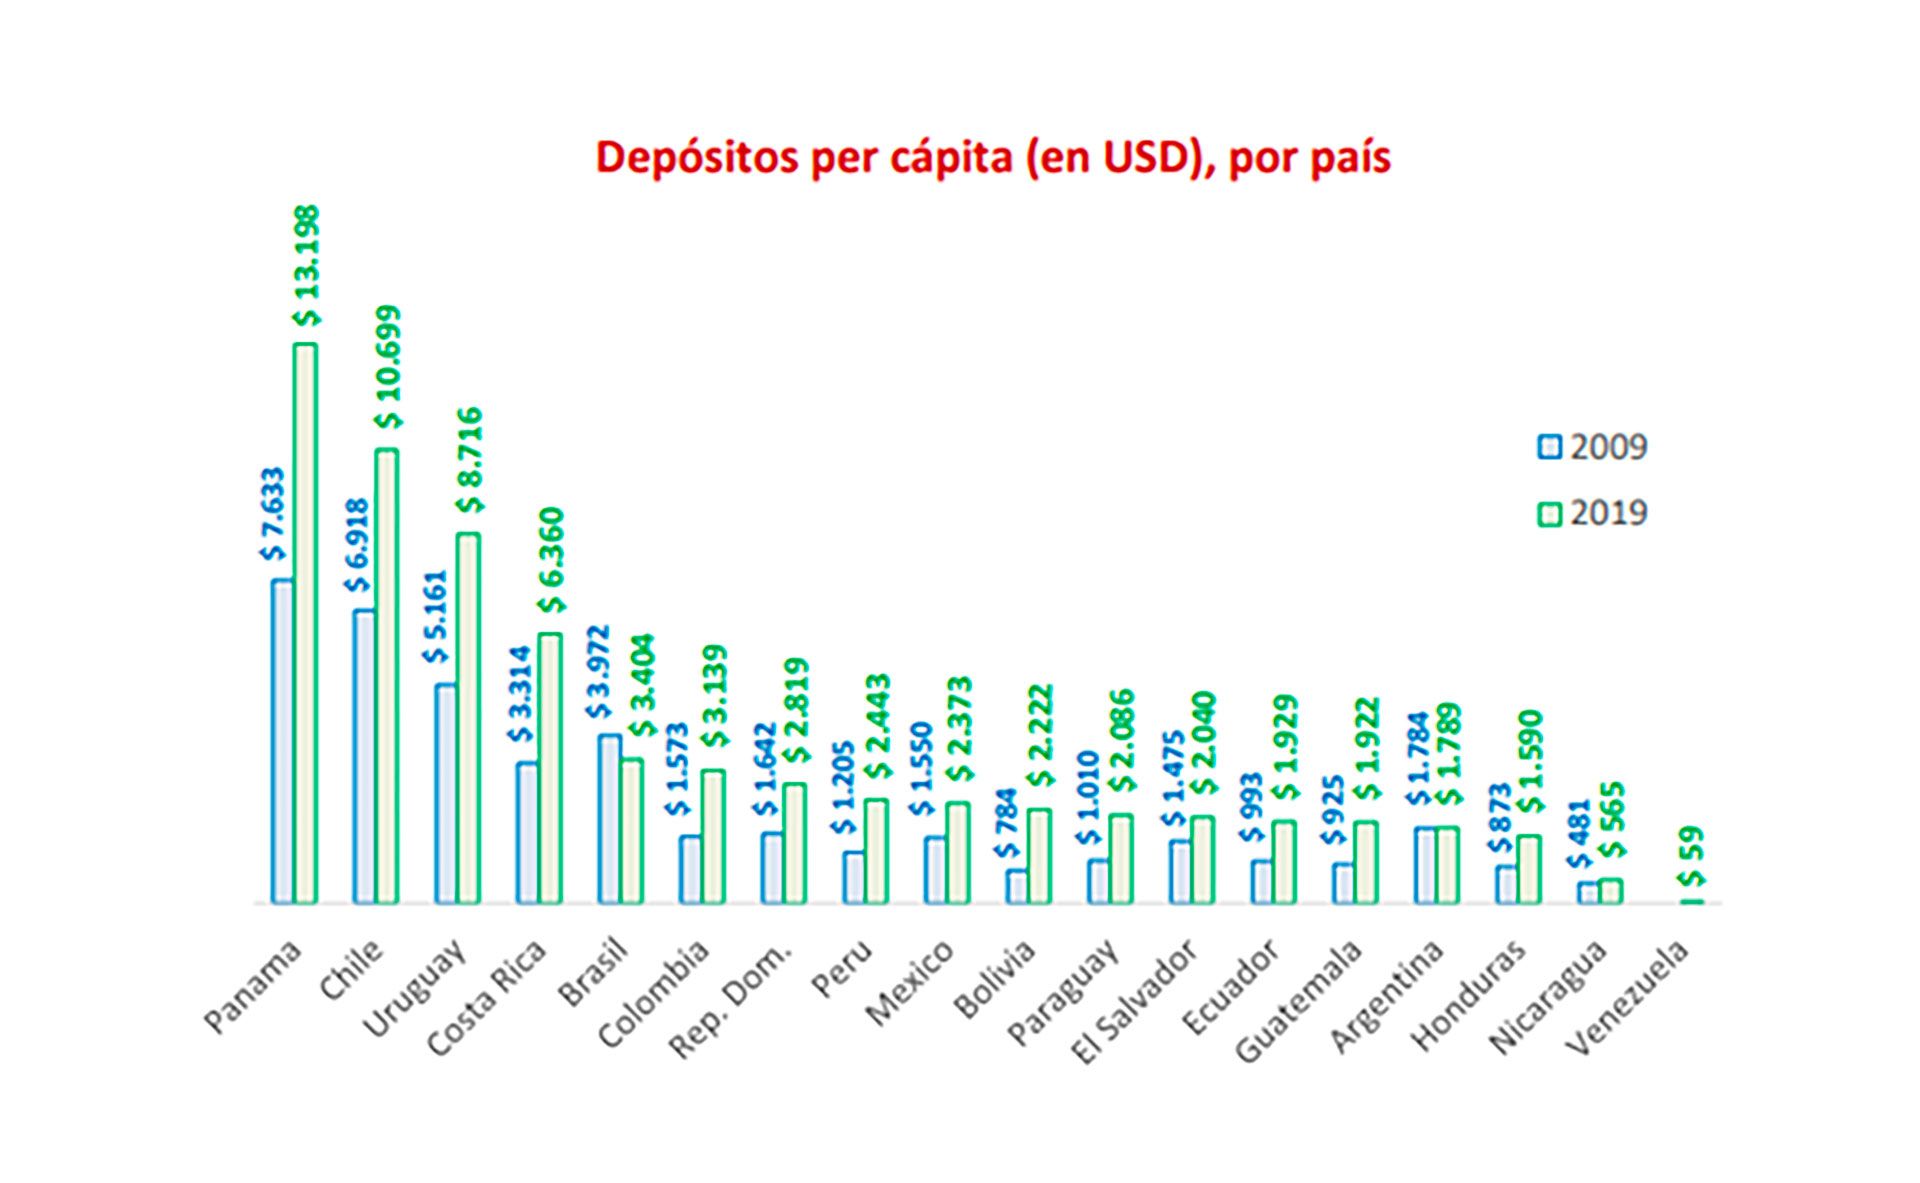 Fuente: Federación Latinoamericana de Bancos (Felaban)